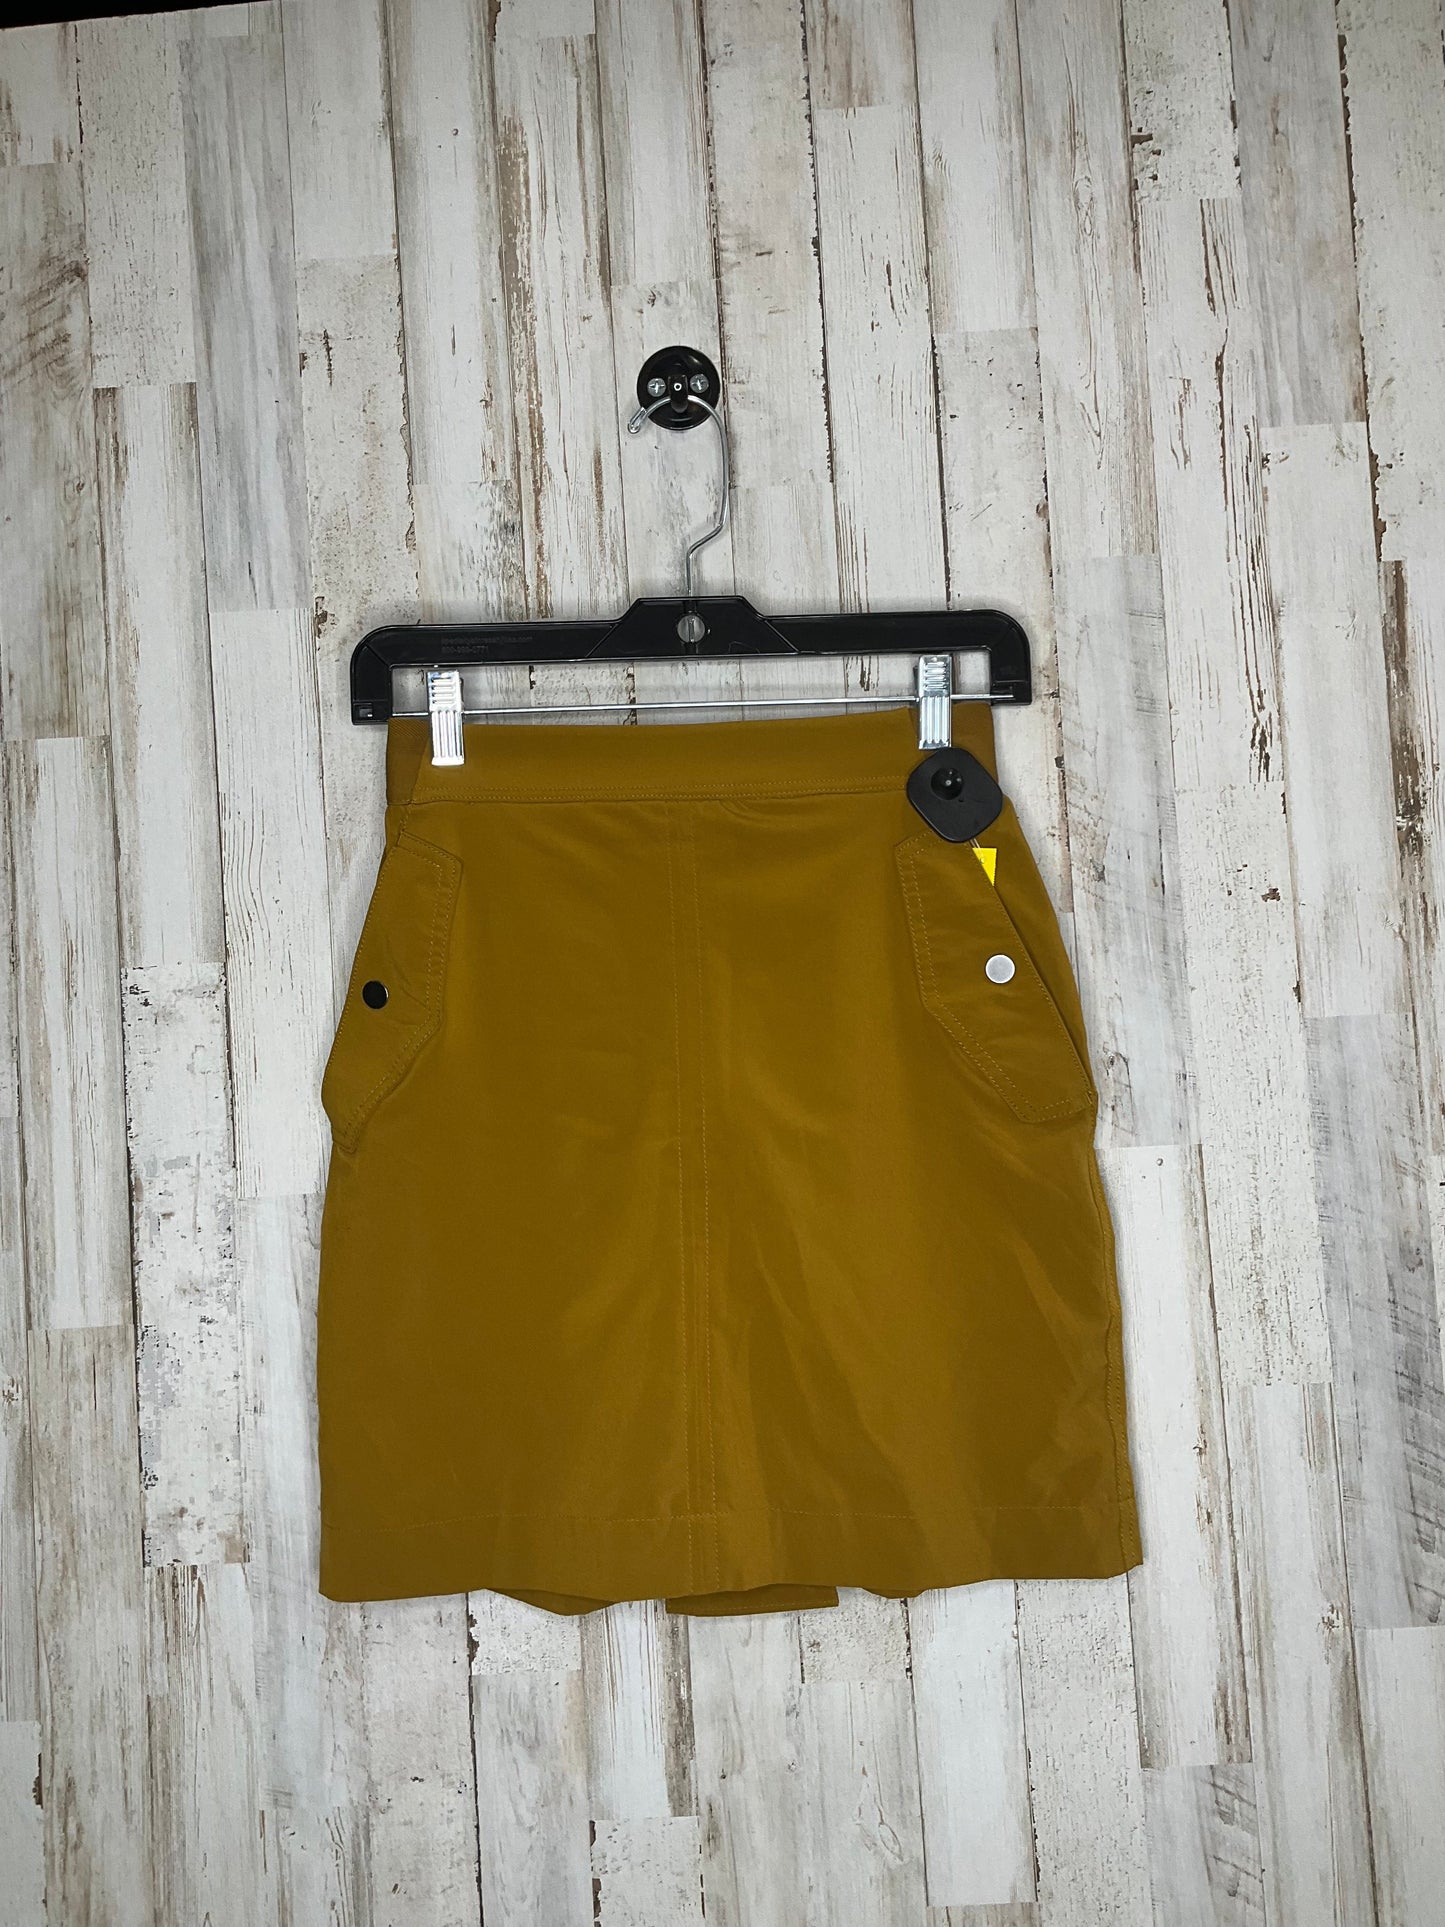 Athletic Skirt Skort By Athleta  Size: 0